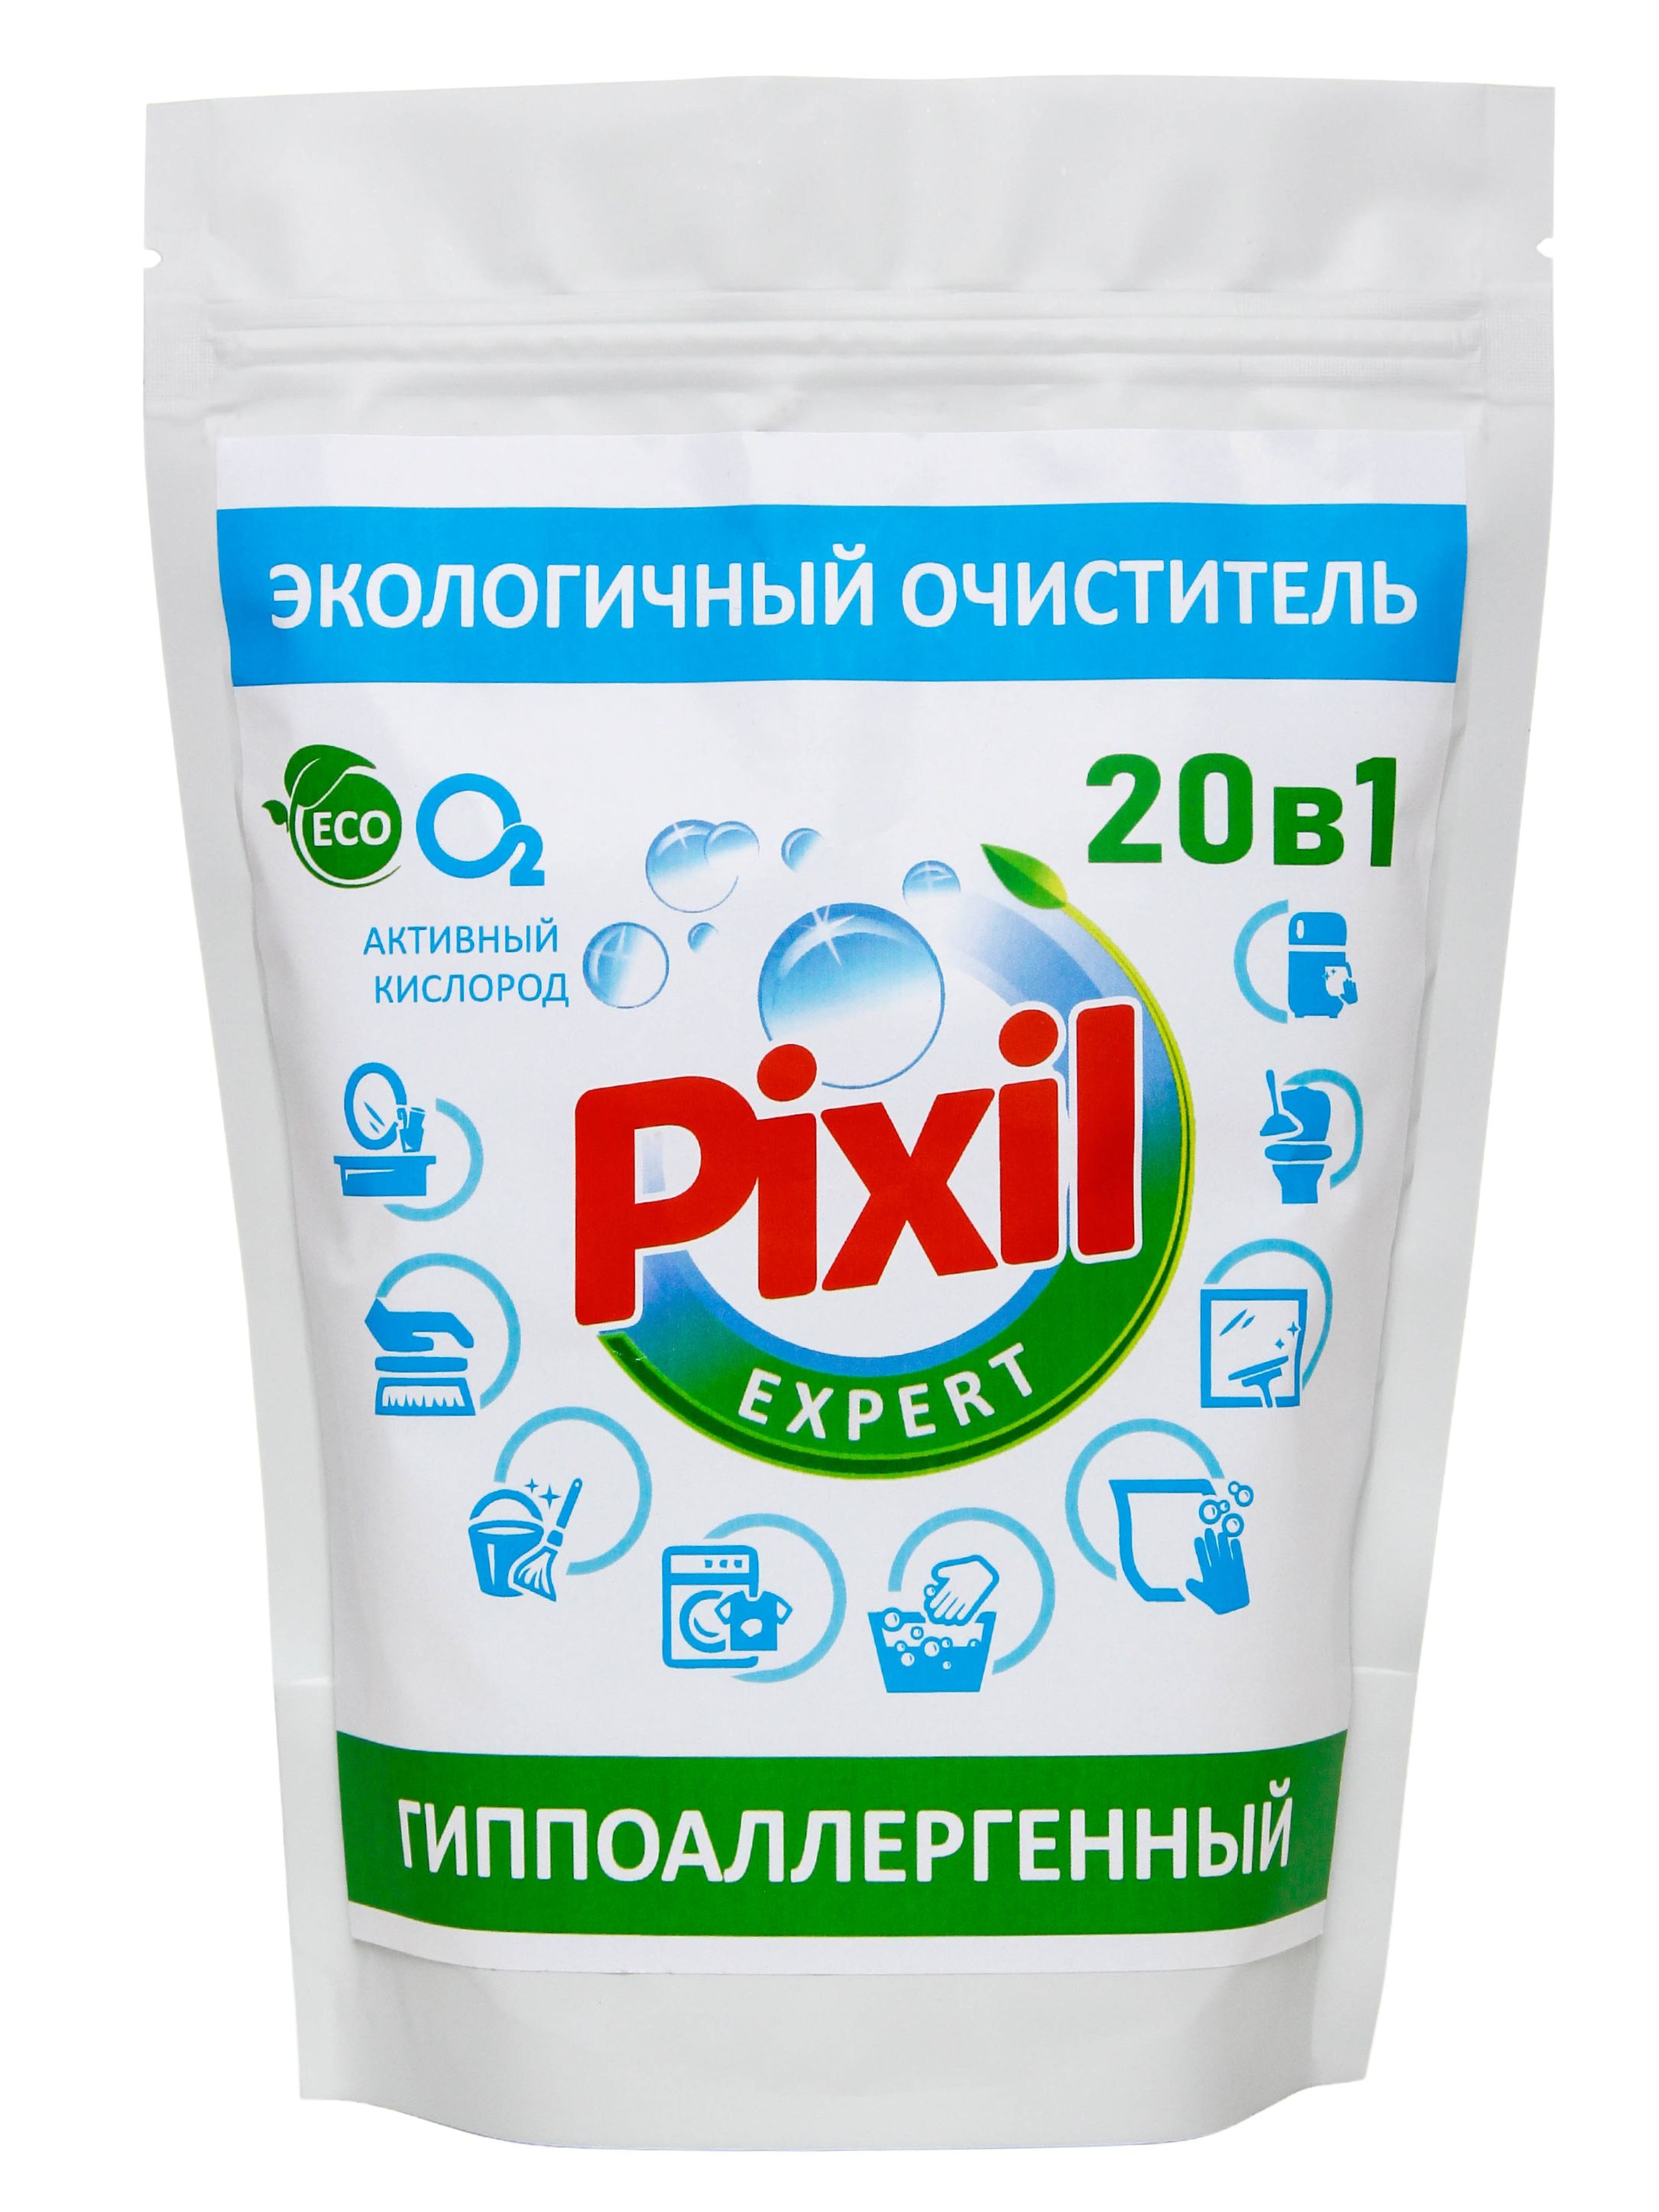 Чистящее средство Pixil.Expert 20 в 1, 850 г